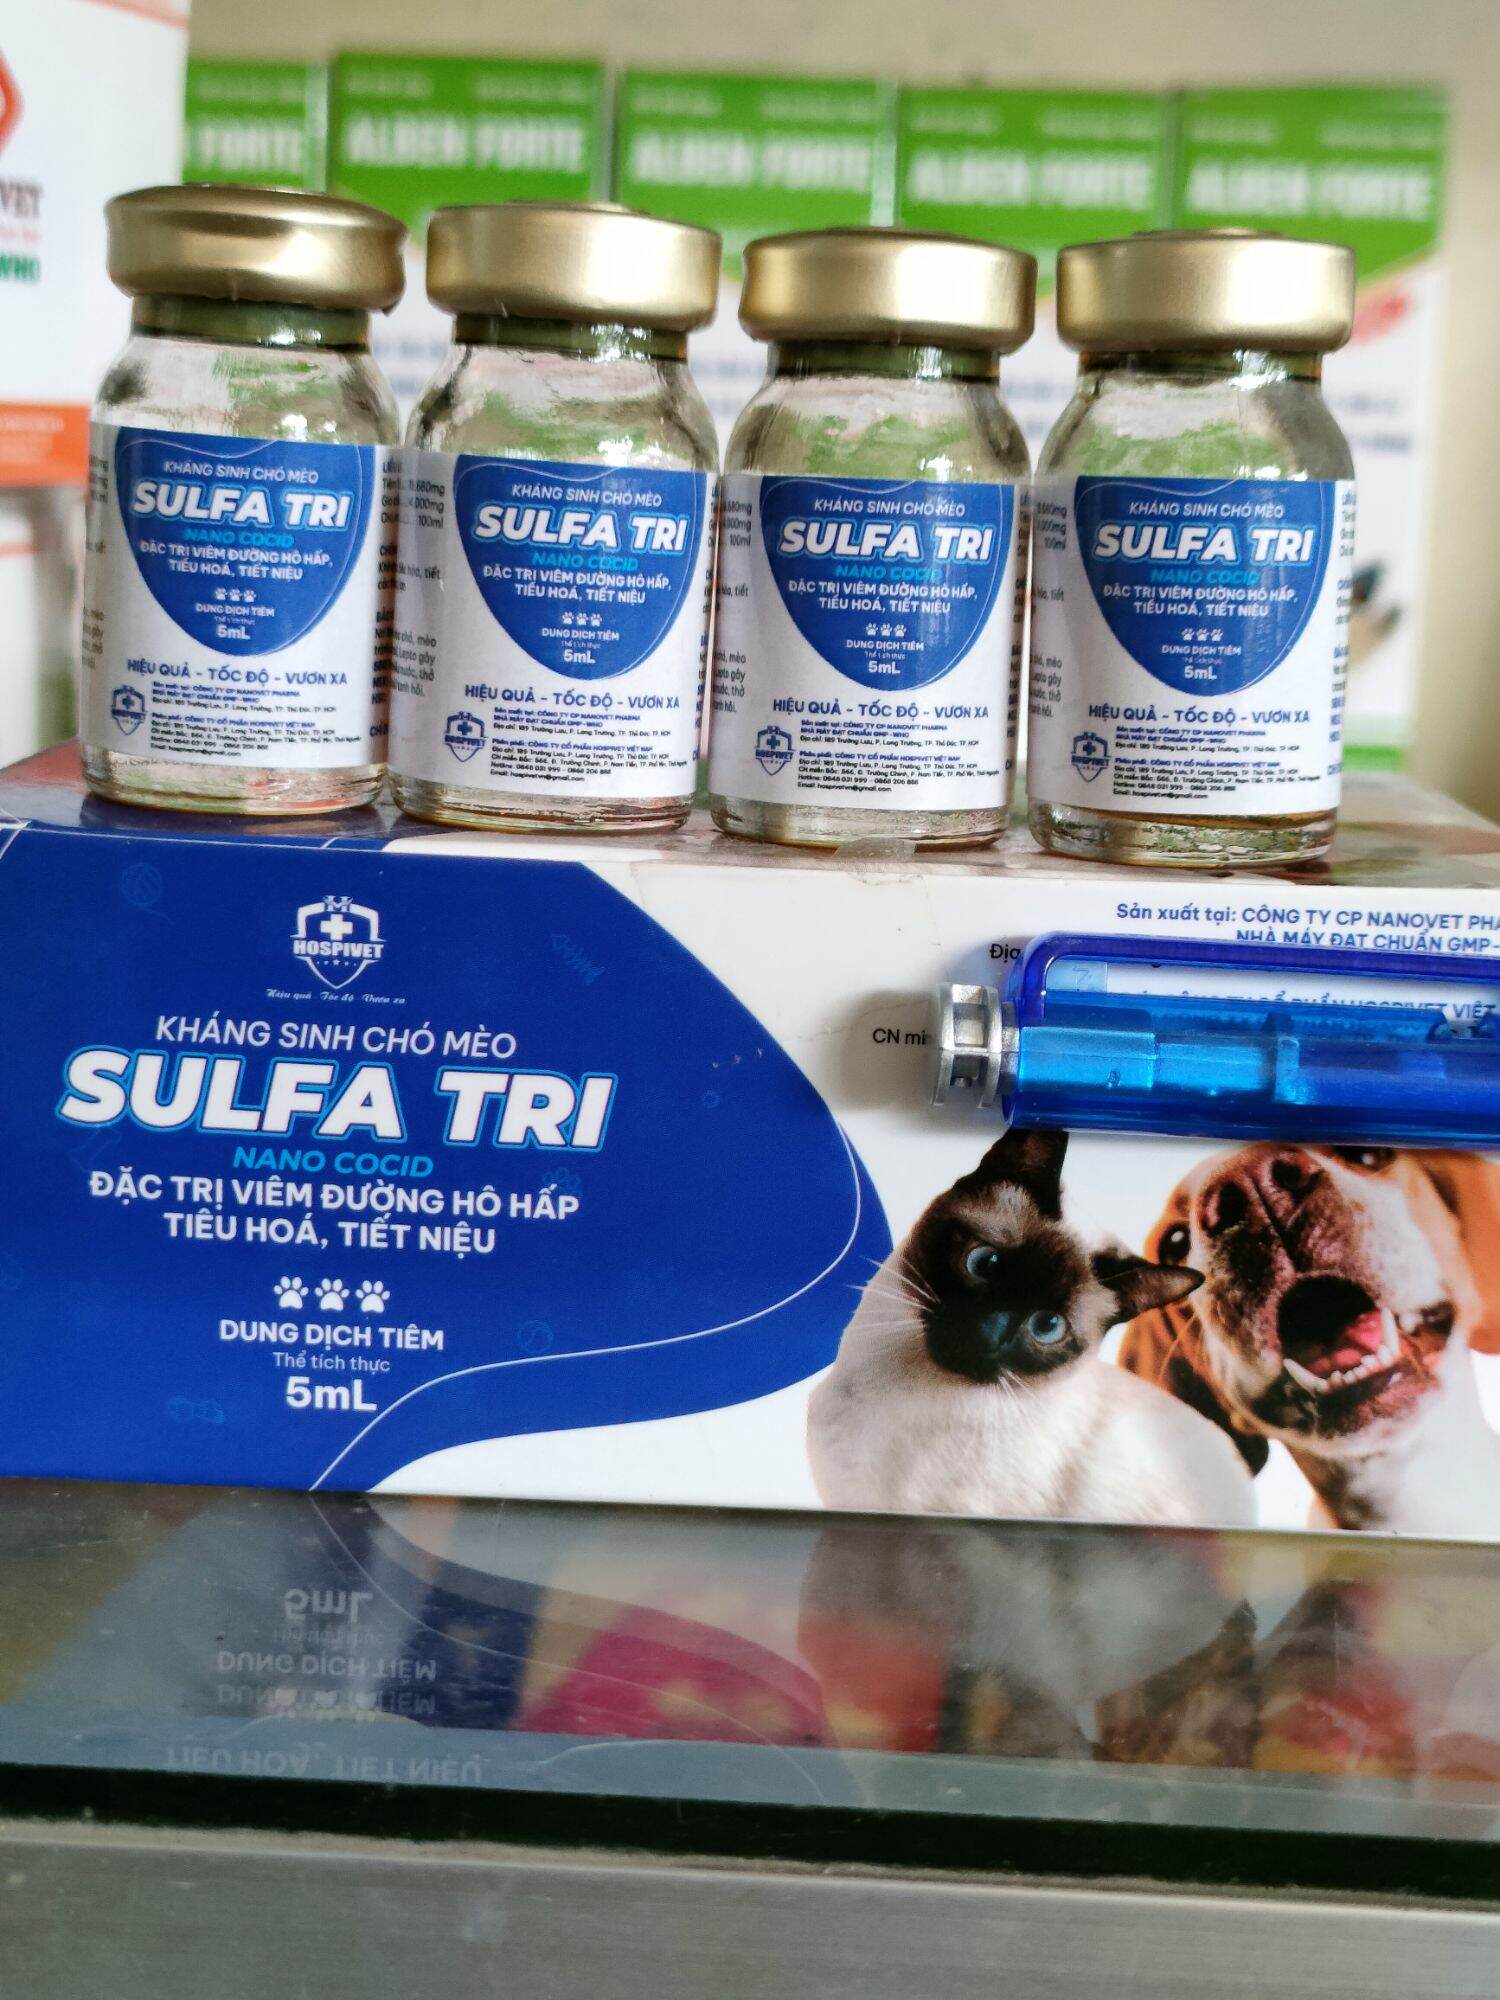 1 lọ SULFA TRI 5ml kháng sinh chó mèo dạng tiêm chuyên về đường ruột, tiêu chảy, nôn mửa, khó tiêu, nôn ói, bỏ ăn không rõ nguyên nhân